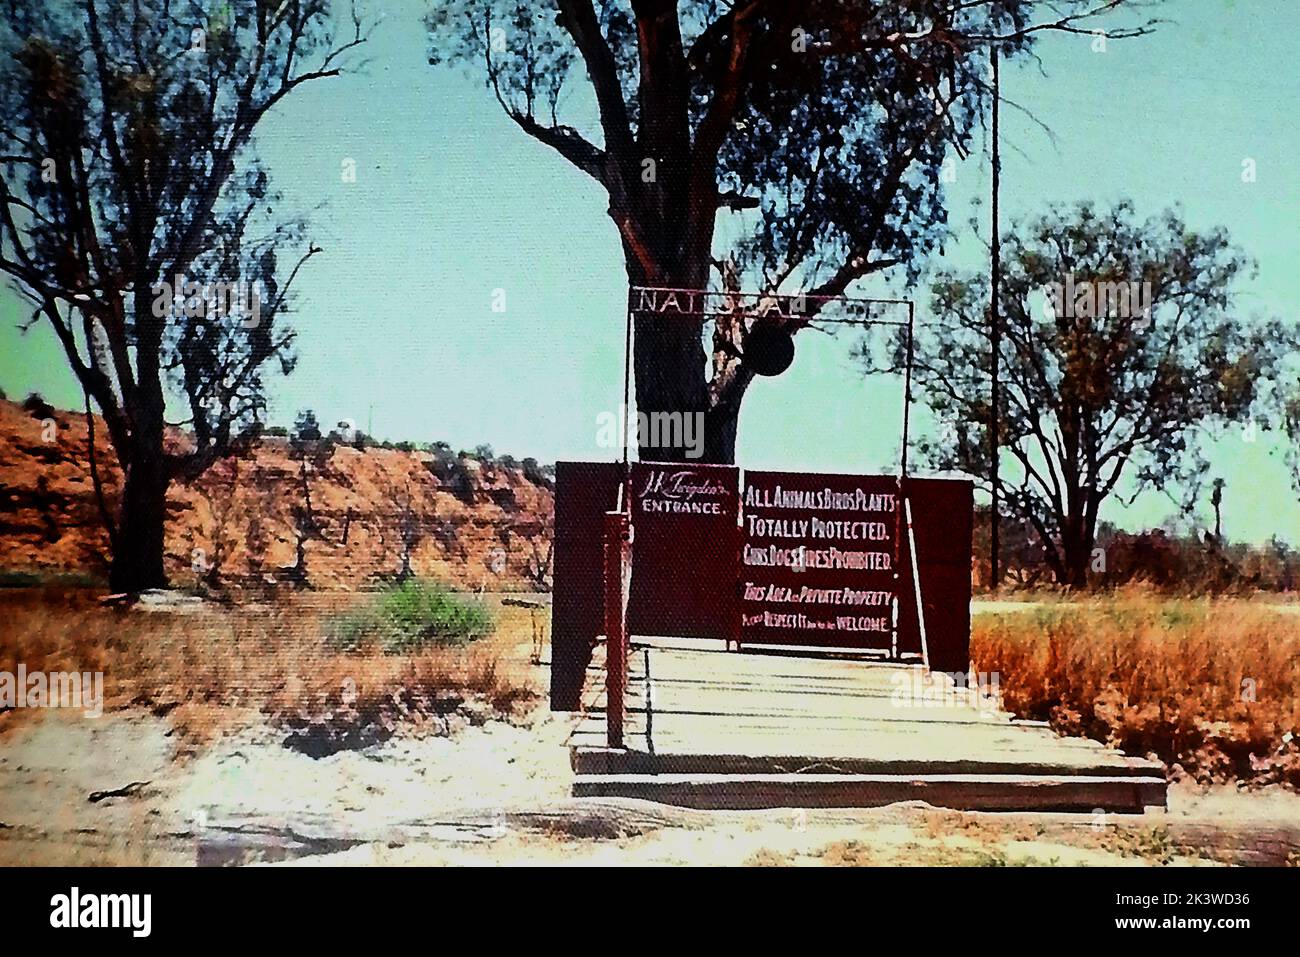 Una fotografía de 1971 tomada en Waikerie Australia de la entrada al parque natural privado de koala y fauna silvestre en la propiedad de J.K (Kevin) Twigden, un agricultor local de albaricoques. El parque de vida salvaje estaba situado a orillas del río Murray (detrás de la entrada, Foto de stock